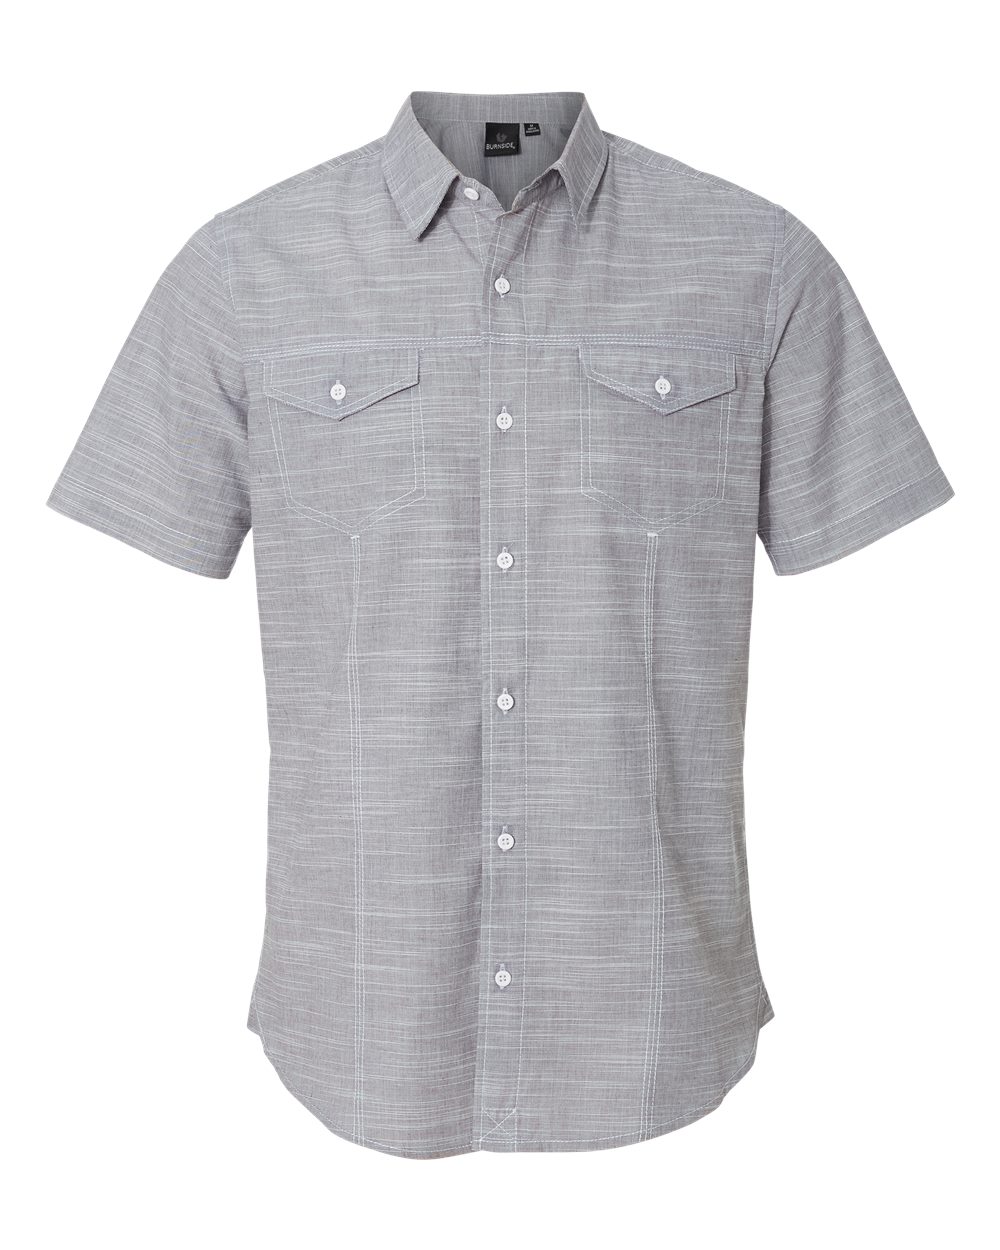 Burnside 9247 - Men's Textured Woven Shirt